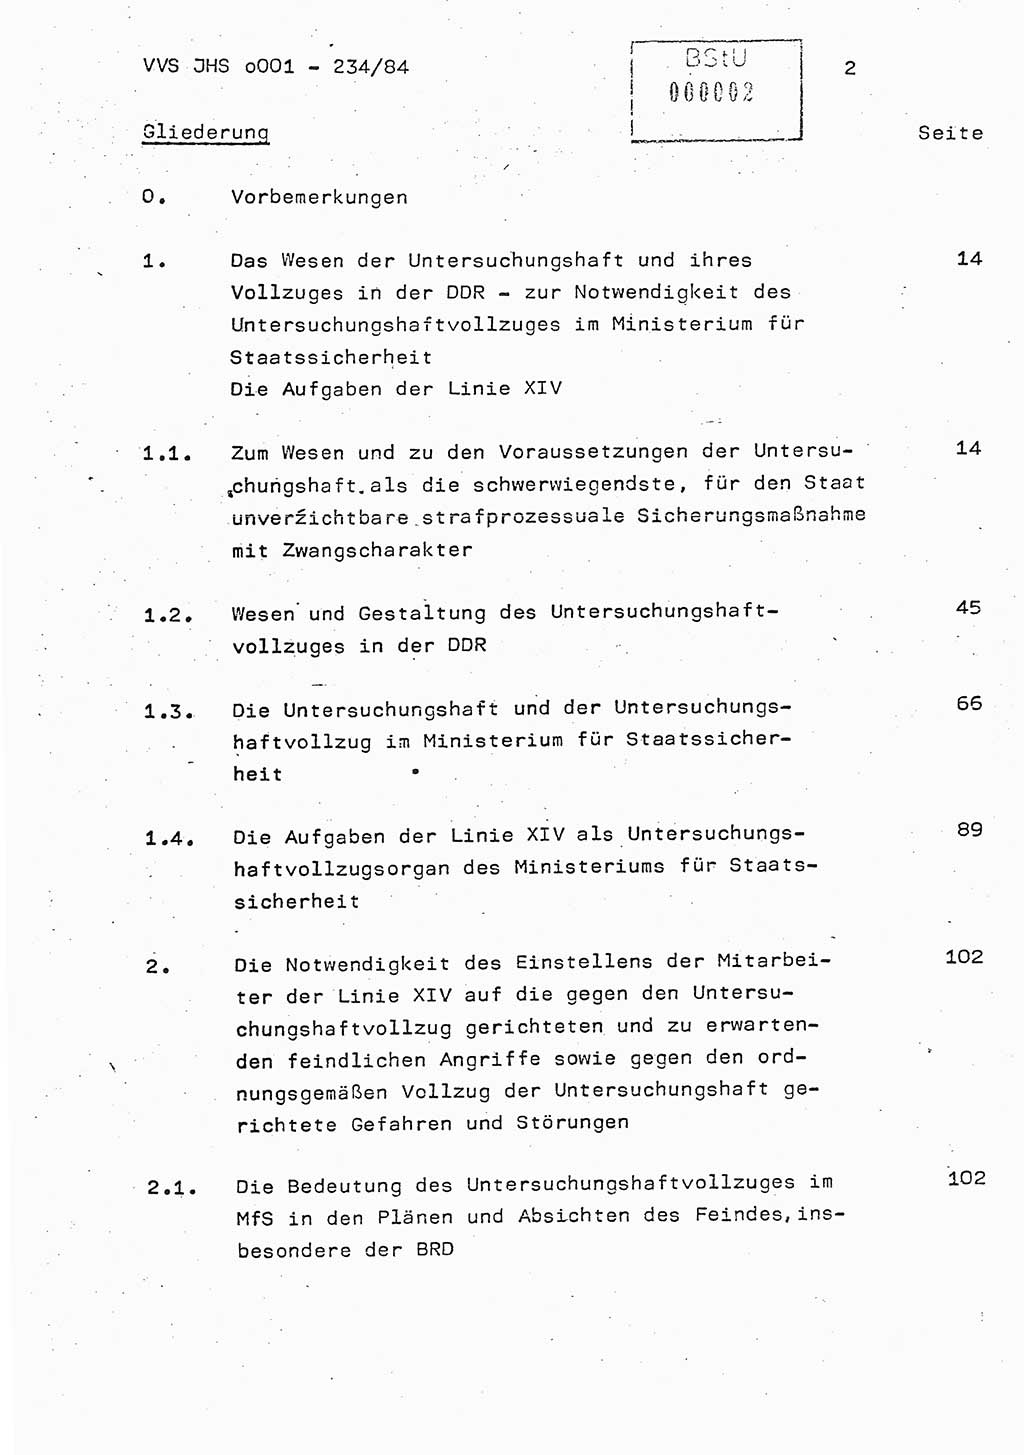 Dissertation Oberst Siegfried Rataizick (Abt. ⅩⅣ), Oberstleutnant Volkmar Heinz (Abt. ⅩⅣ), Oberstleutnant Werner Stein (HA Ⅸ), Hauptmann Heinz Conrad (JHS), Ministerium für Staatssicherheit (MfS) [Deutsche Demokratische Republik (DDR)], Juristische Hochschule (JHS), Vertrauliche Verschlußsache (VVS) o001-234/84, Potsdam 1984, Seite 2 (Diss. MfS DDR JHS VVS o001-234/84 1984, S. 2)